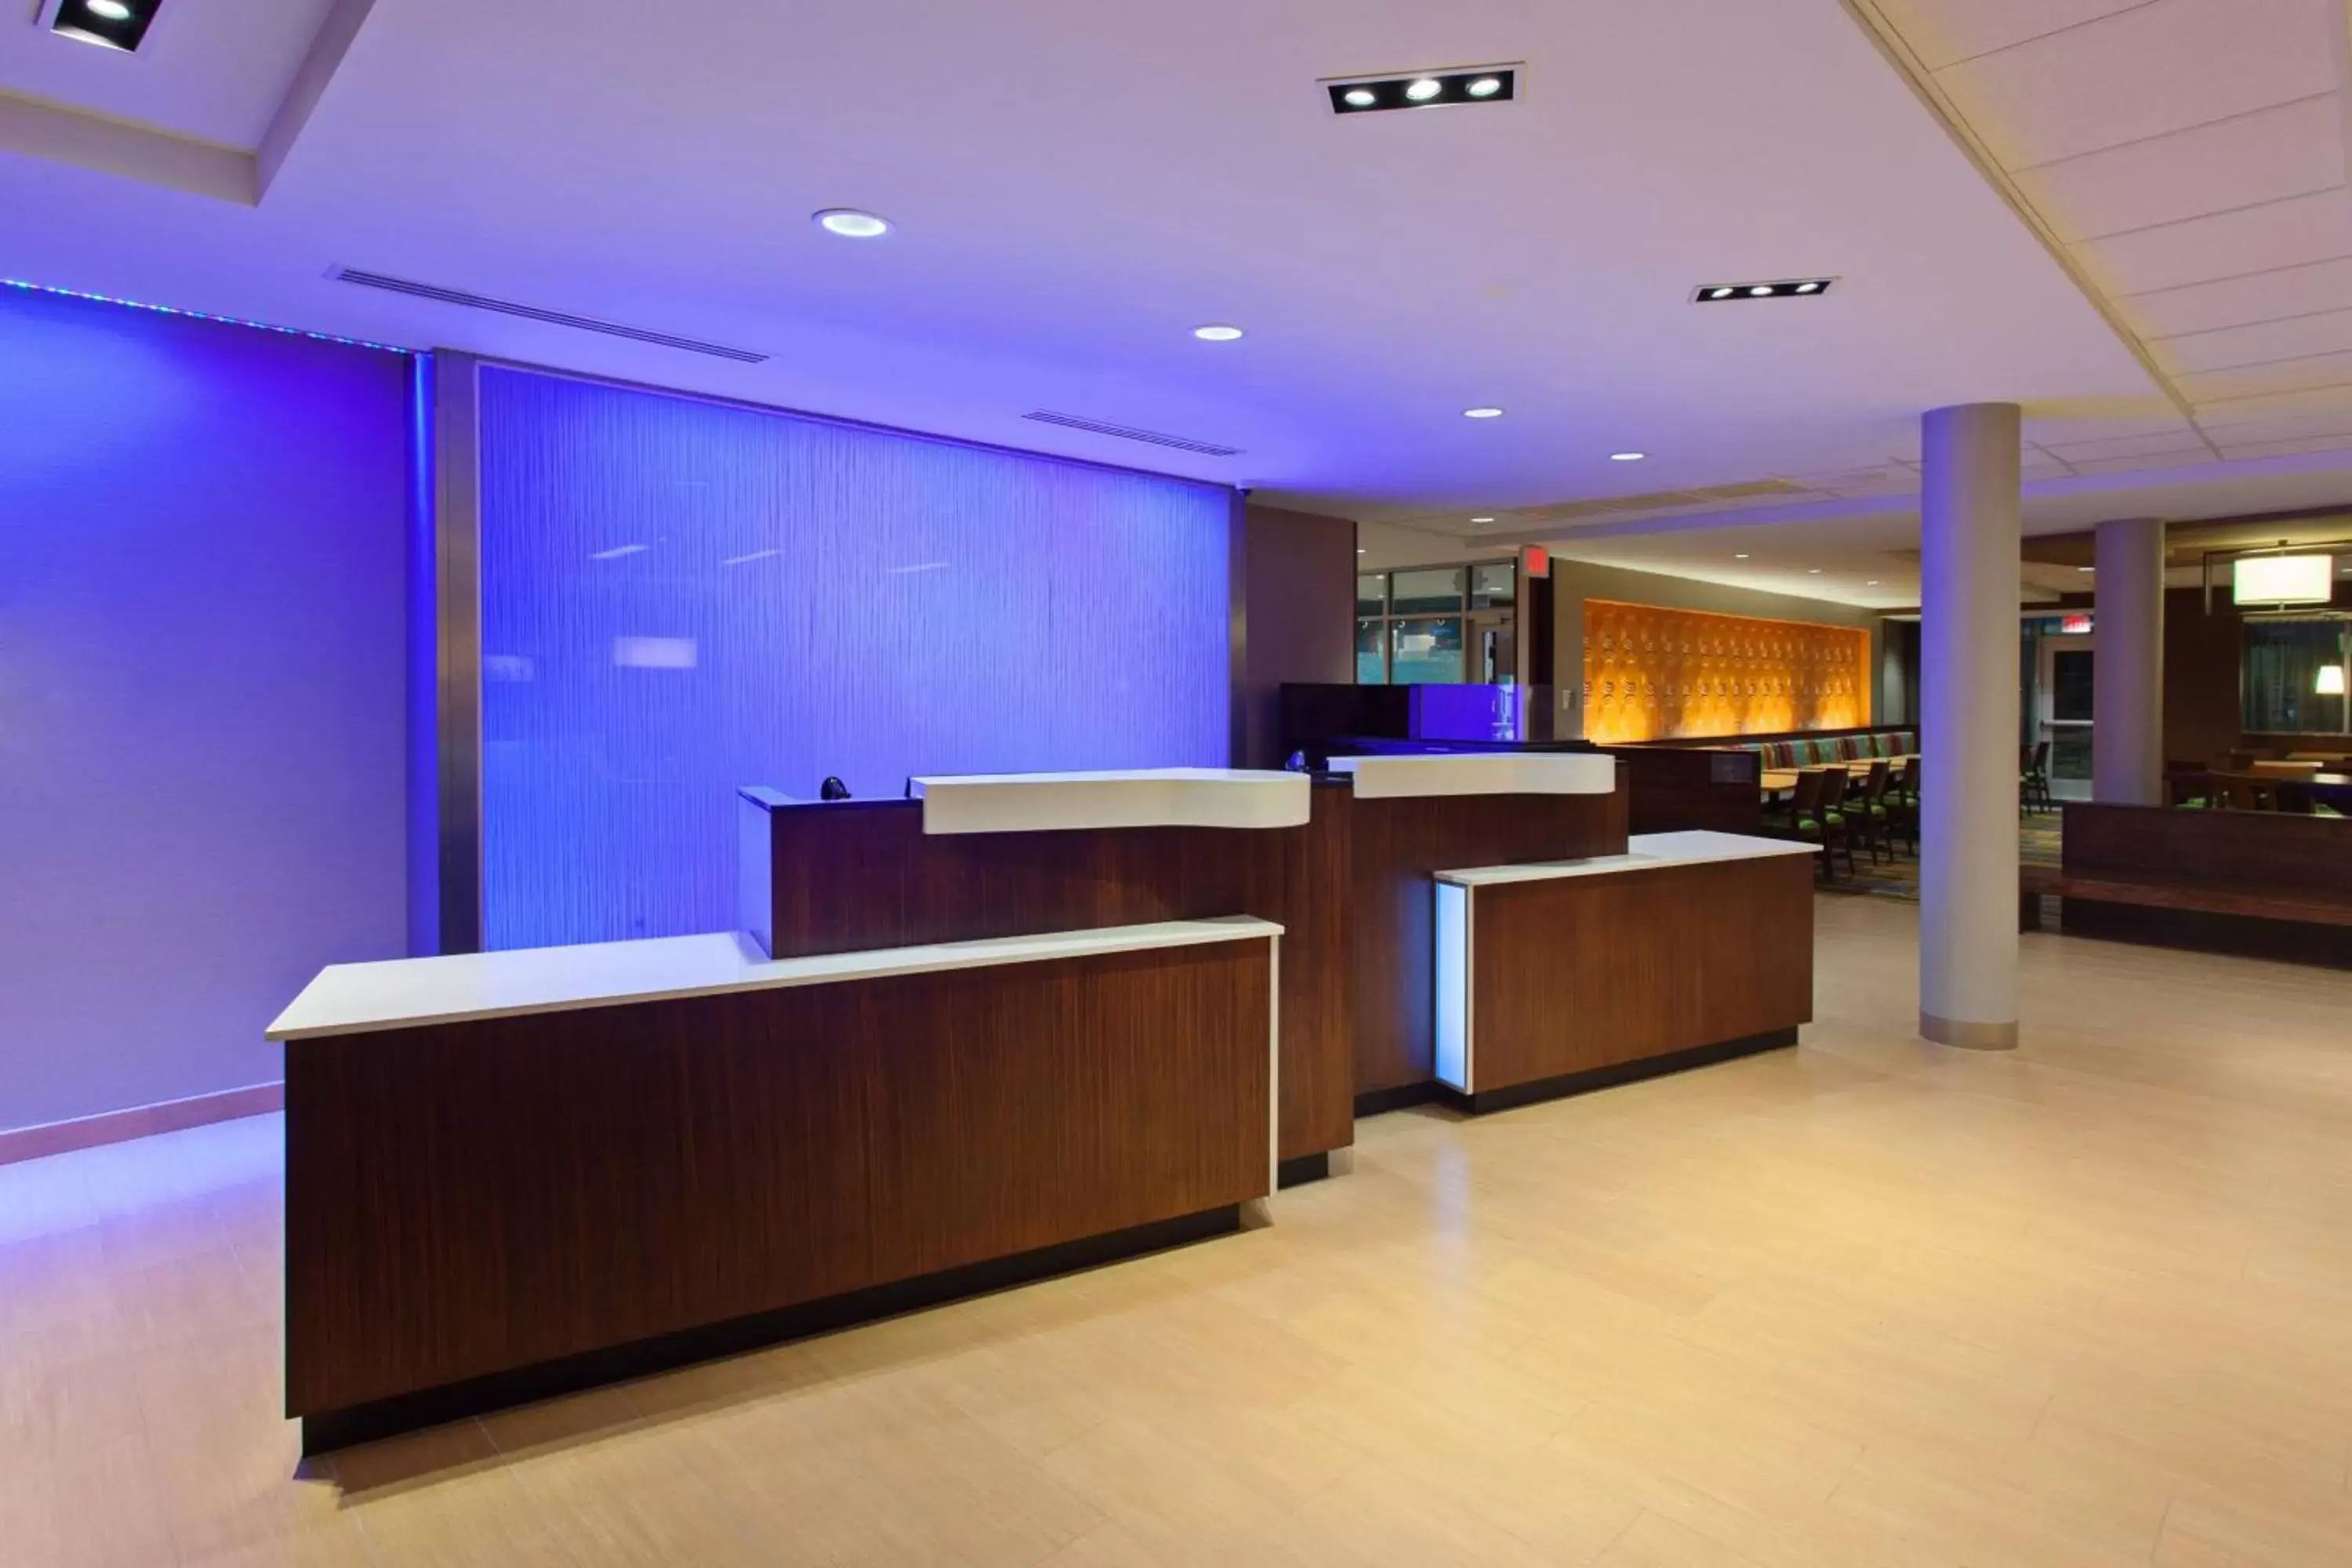 Lobby or reception, Lobby/Reception in Fairfield Inn & Suites by Marriott Tucumcari